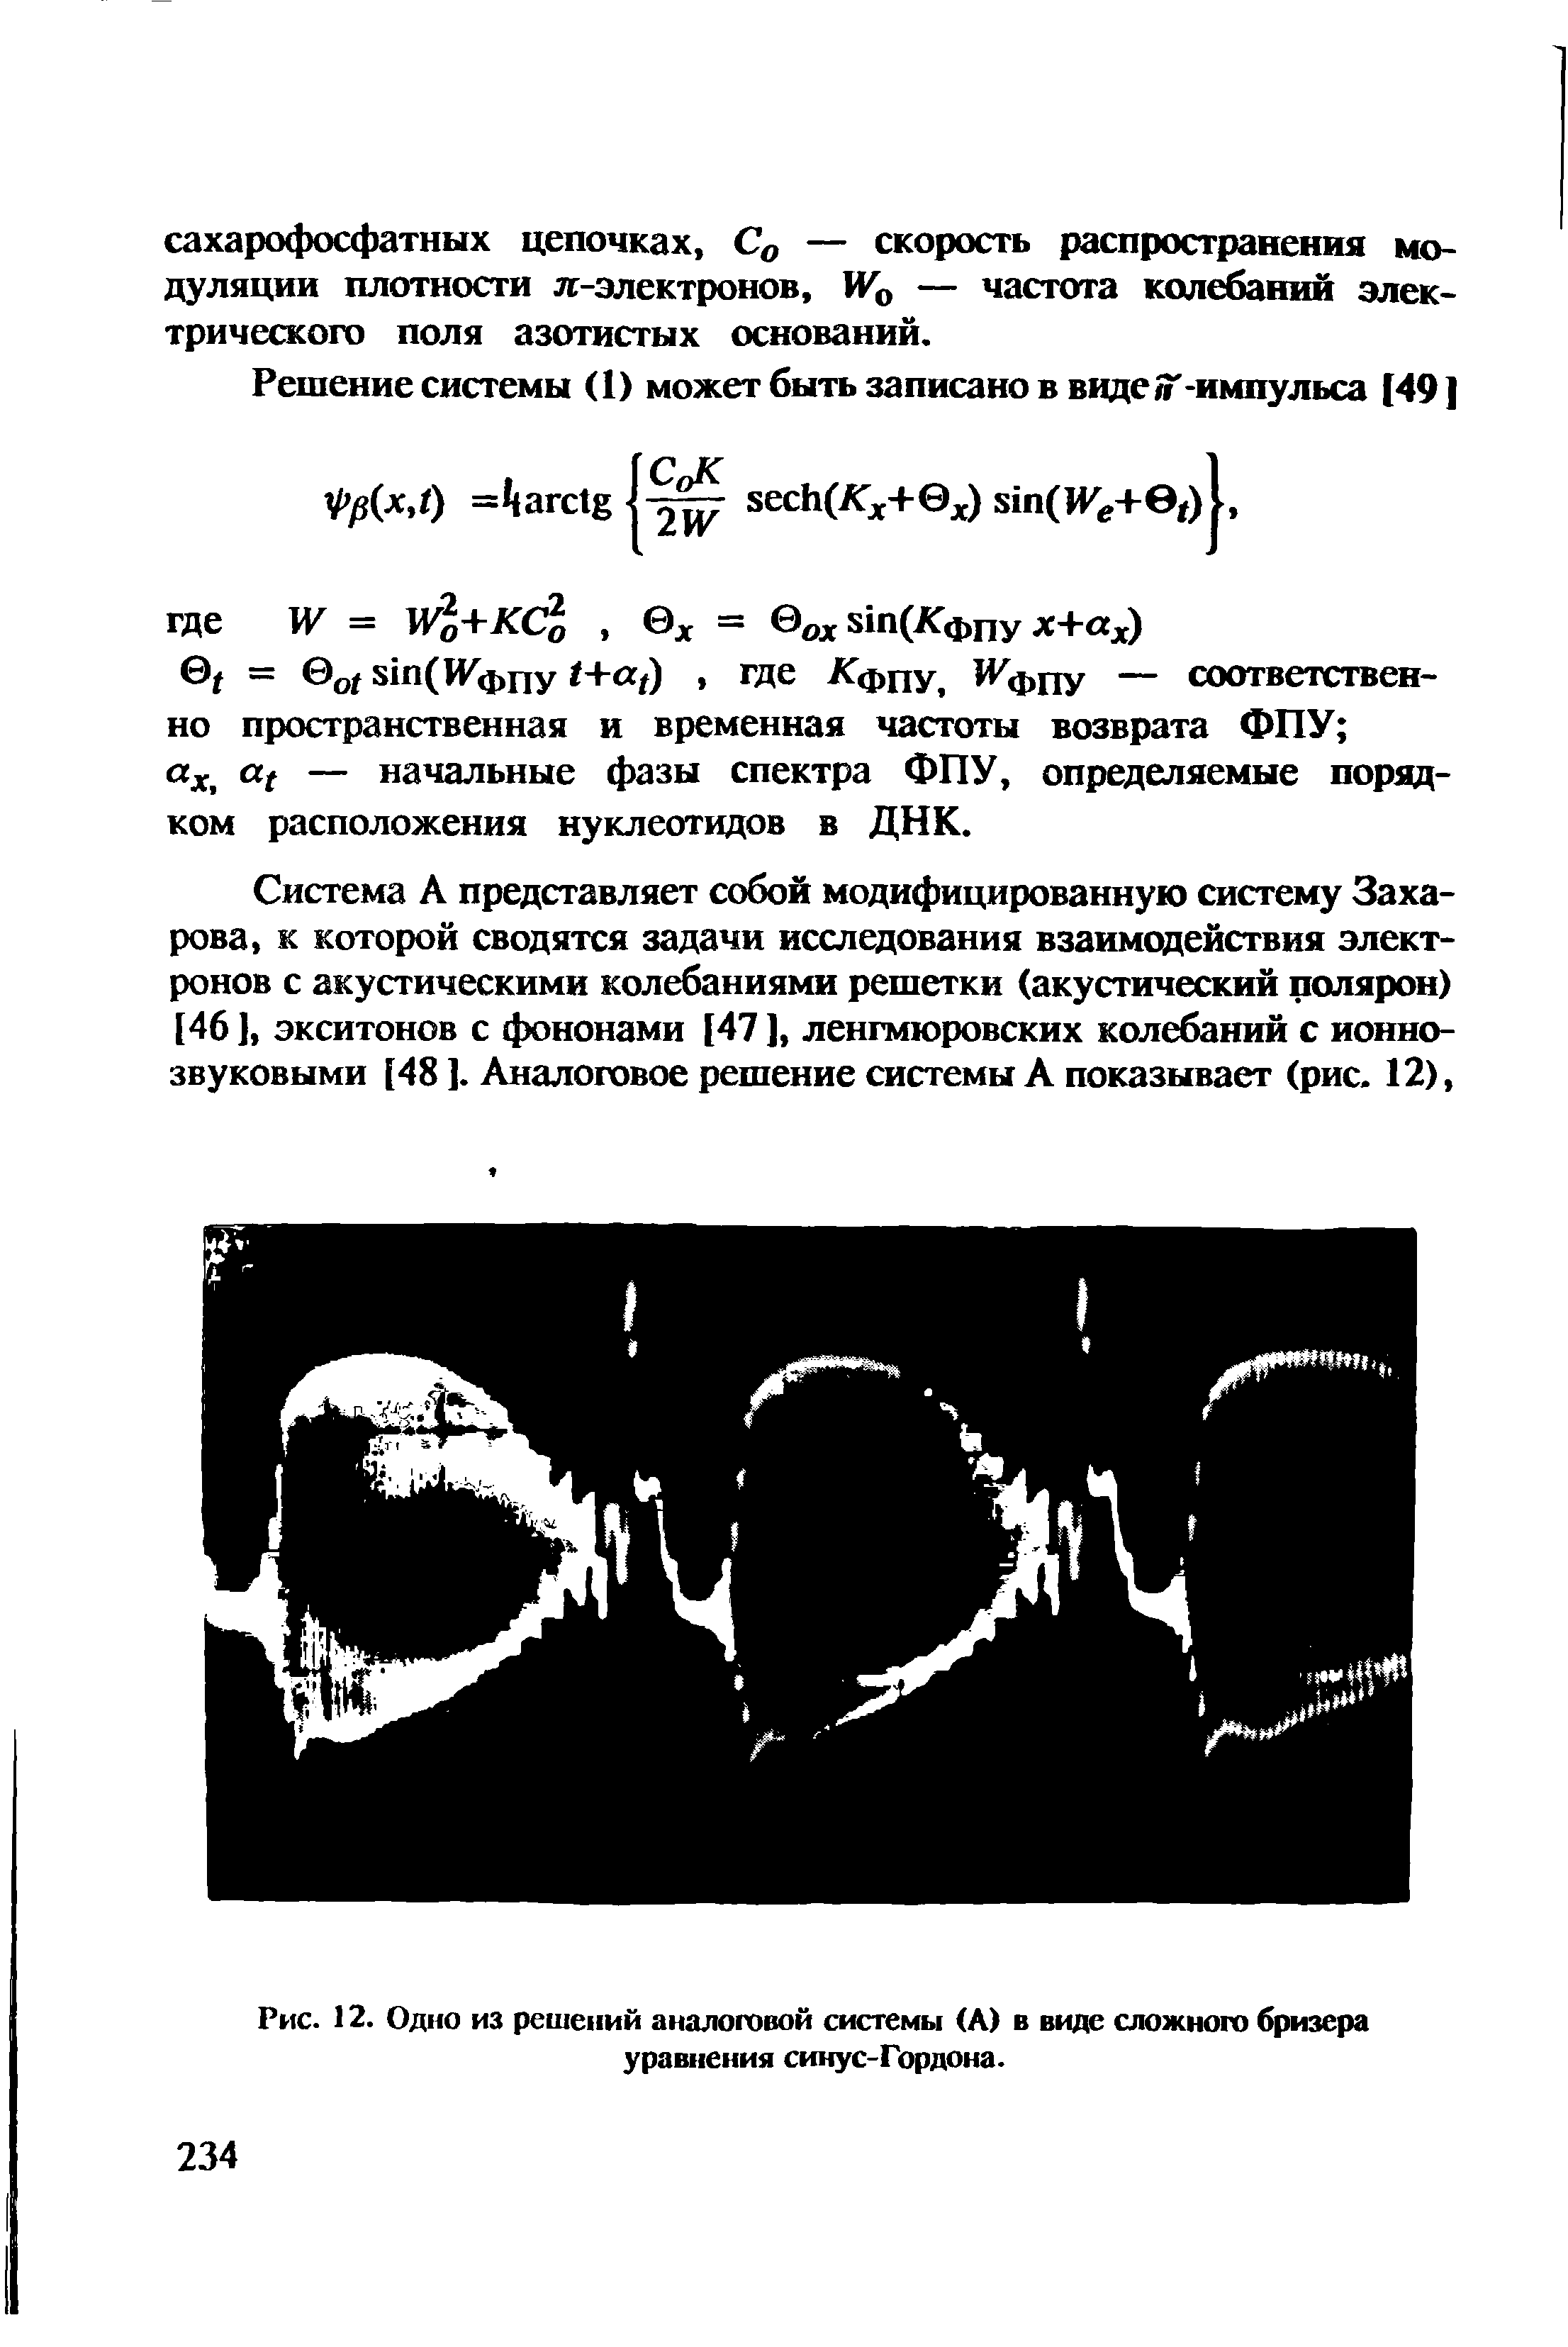 Рис. 12. Одно из решений аналоговой системы (А) в виде сложного бризера уравнения синус-Гордона.